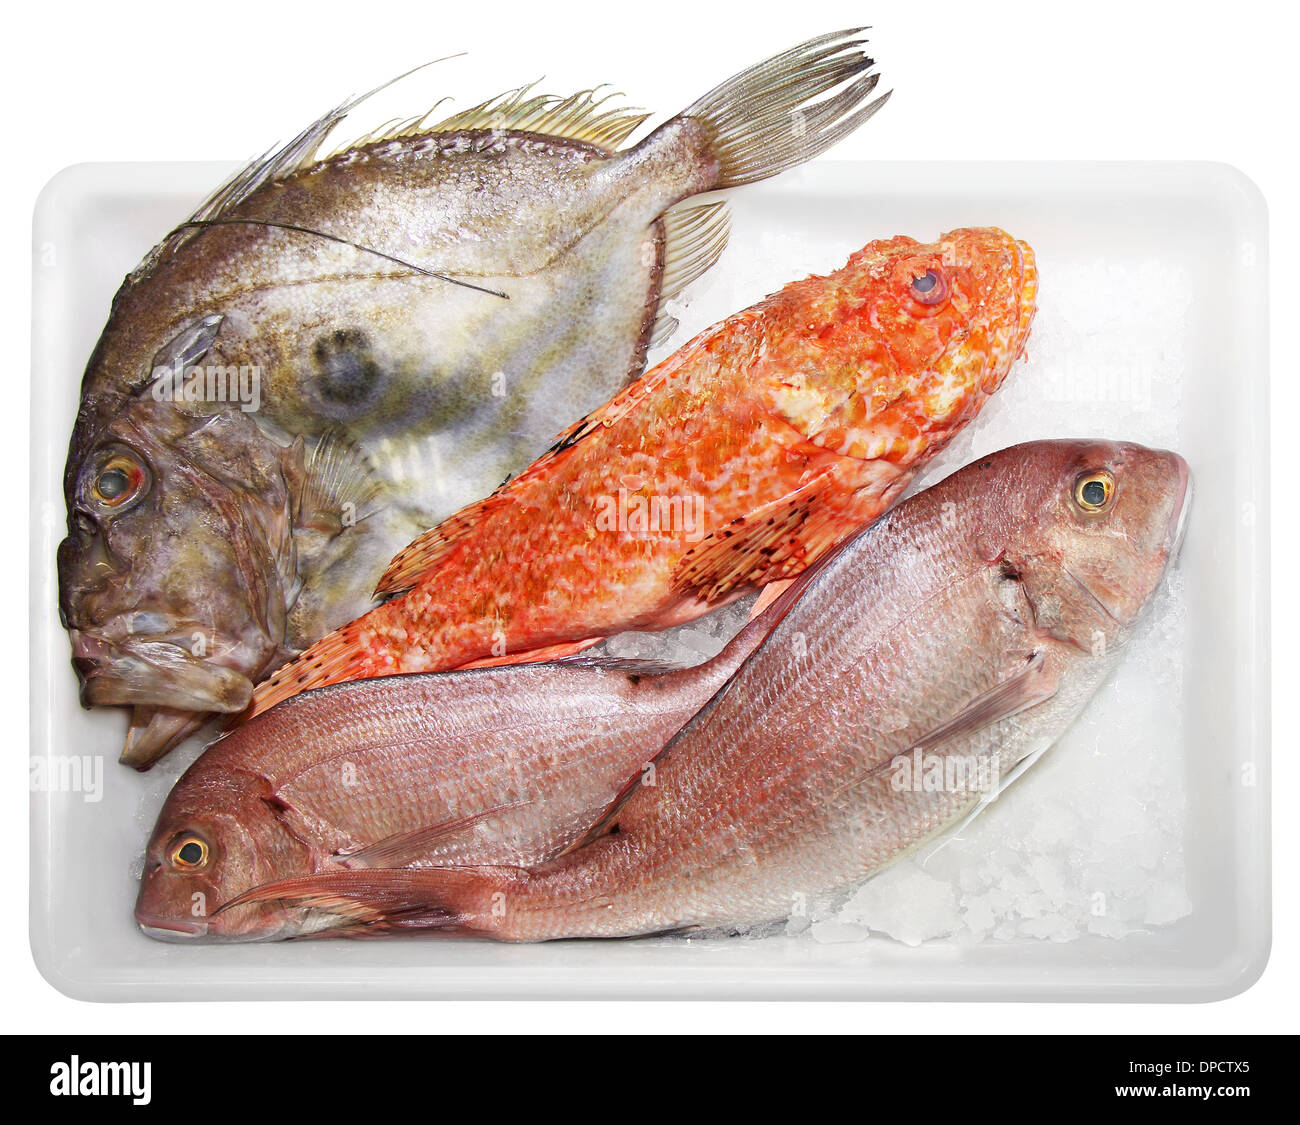 Fresh Scorpaenidae, John Dory et Dentex, de la qualité et de délicieux poissons, était sur fond blanc Banque D'Images